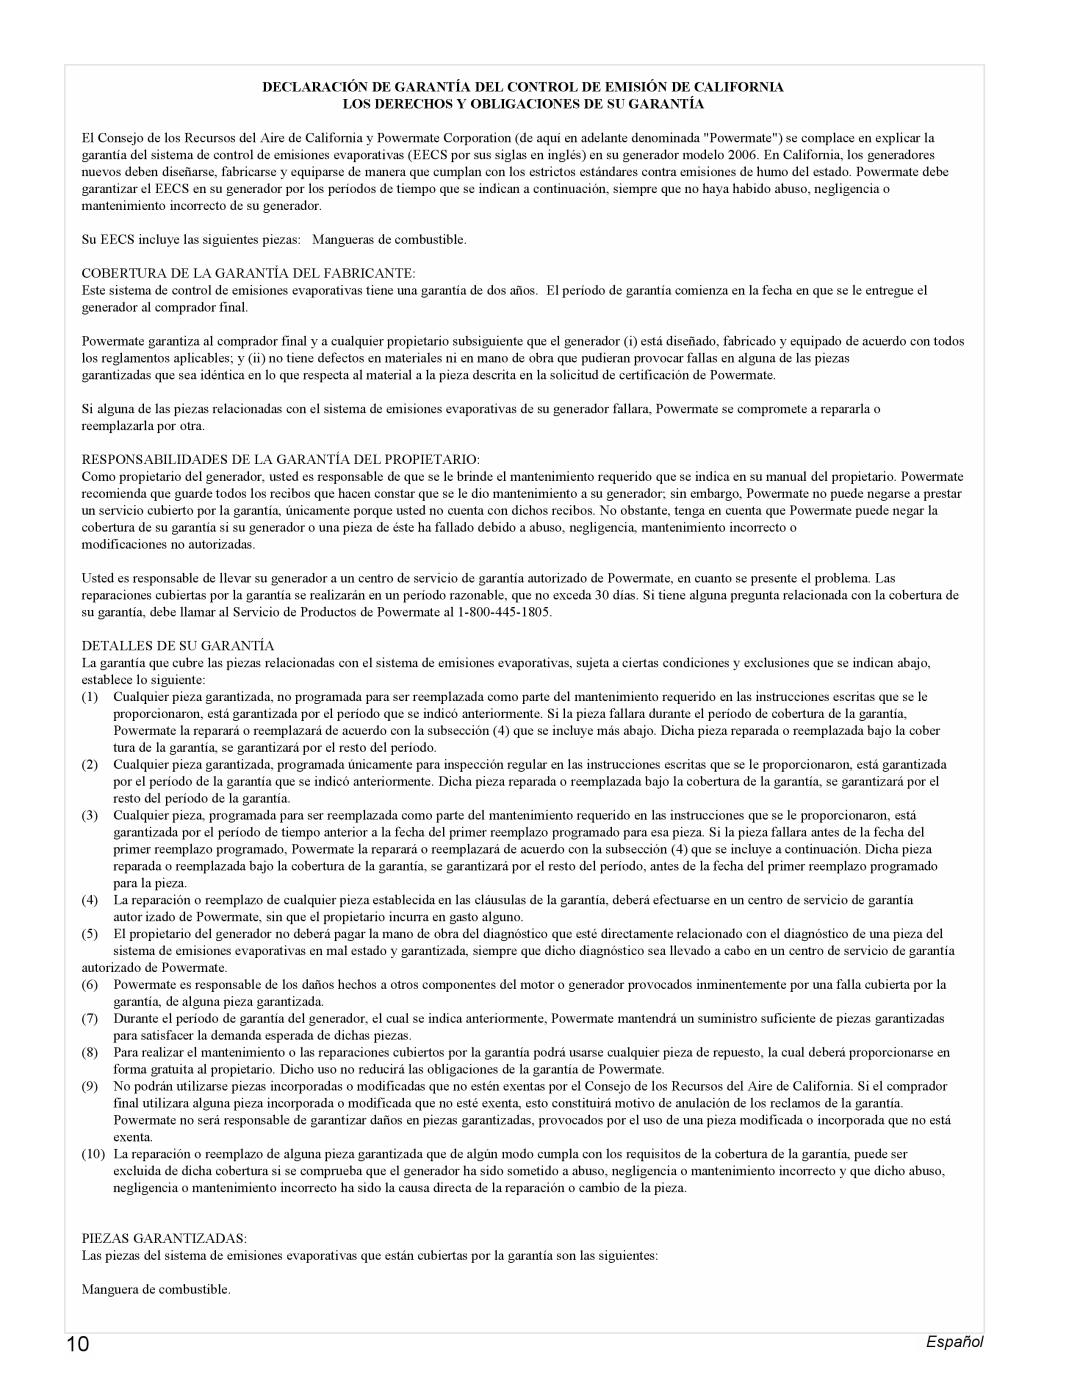 Powermate PMC496500 manual Los Derechos Y Obligaciones De Su Garantía, Español 